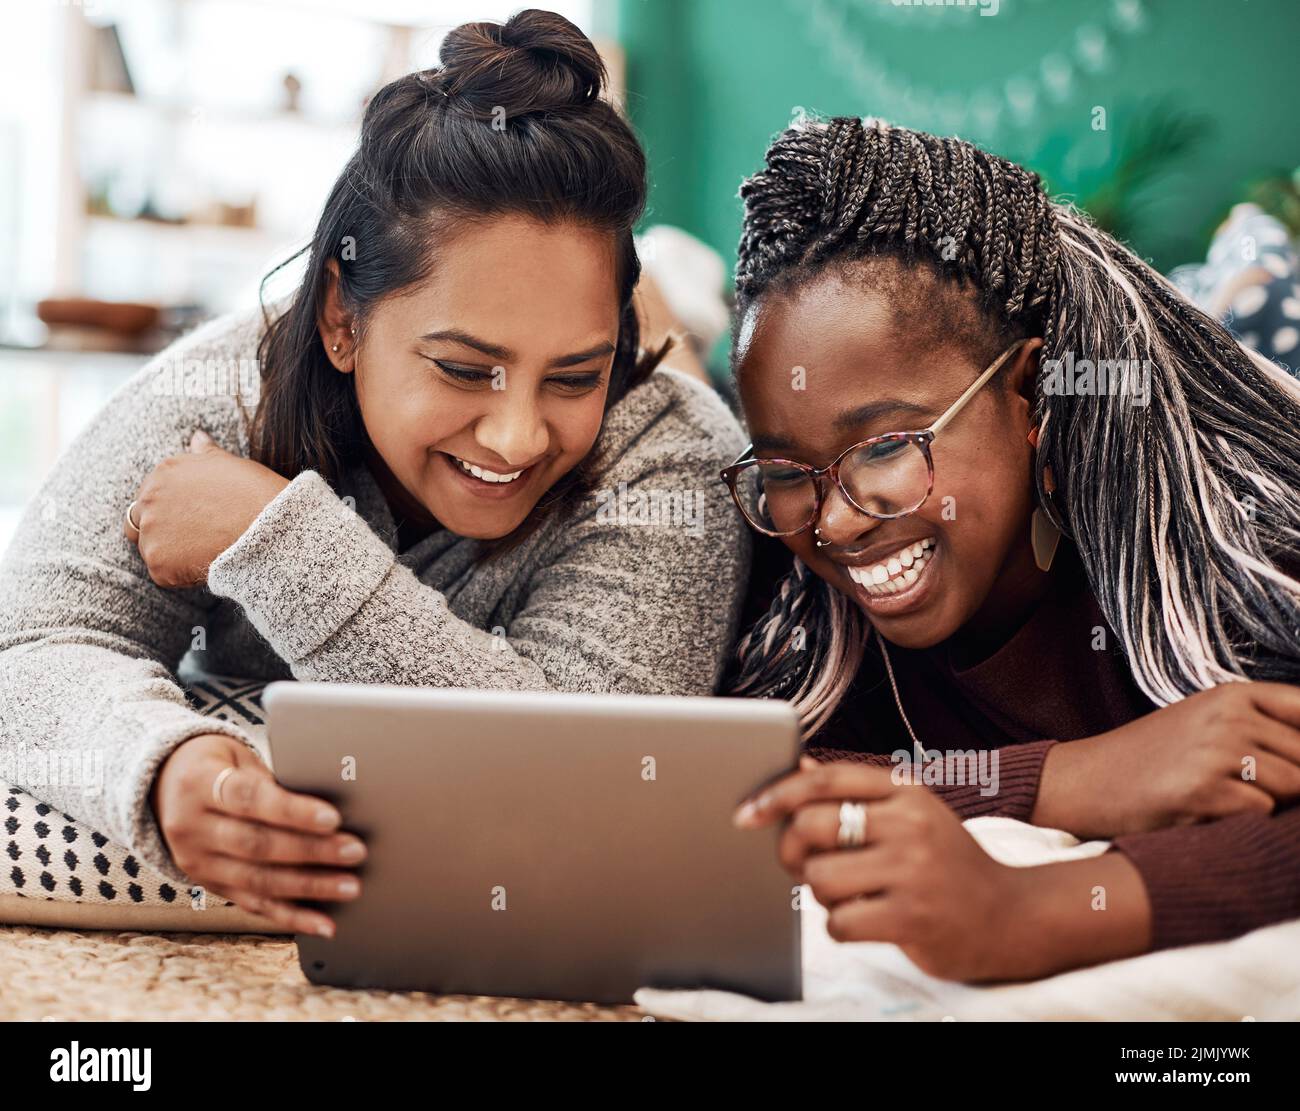 Pase su tiempo con las personas que le hacen reír. Dos mujeres jóvenes usando una tableta digital juntas en el suelo en casa. Foto de stock